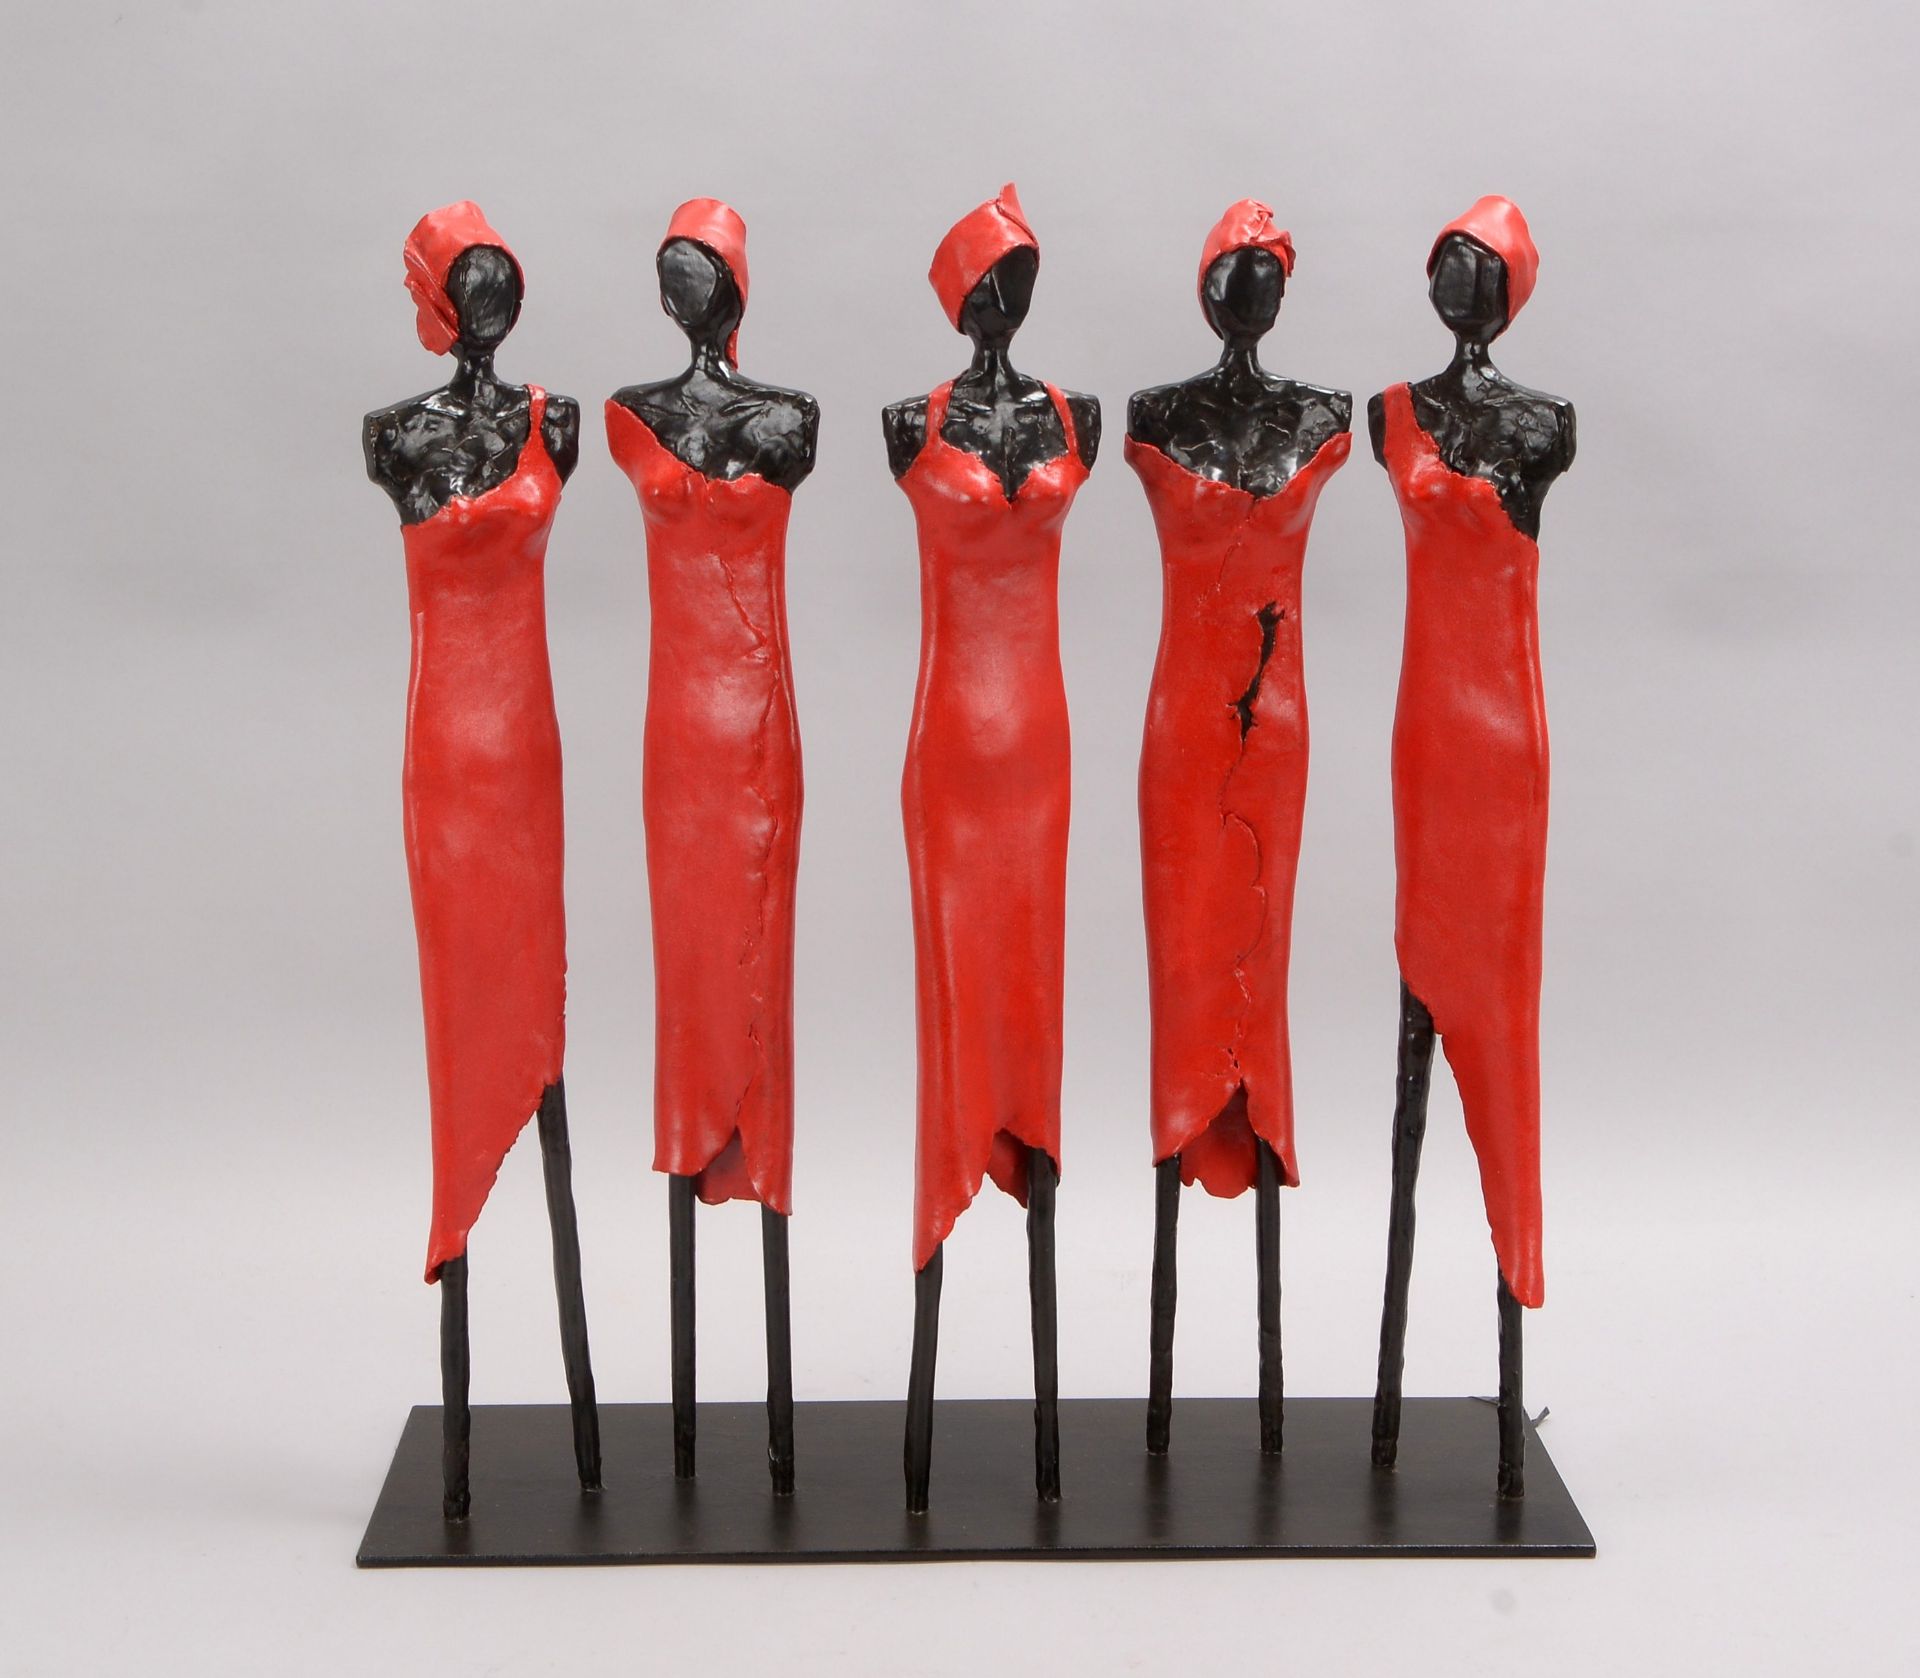 Lamp, Karin (zeitgen&ouml;ssische freischaffende Bildhauerin, lebt und arbeitet in Eutin), Skulpture